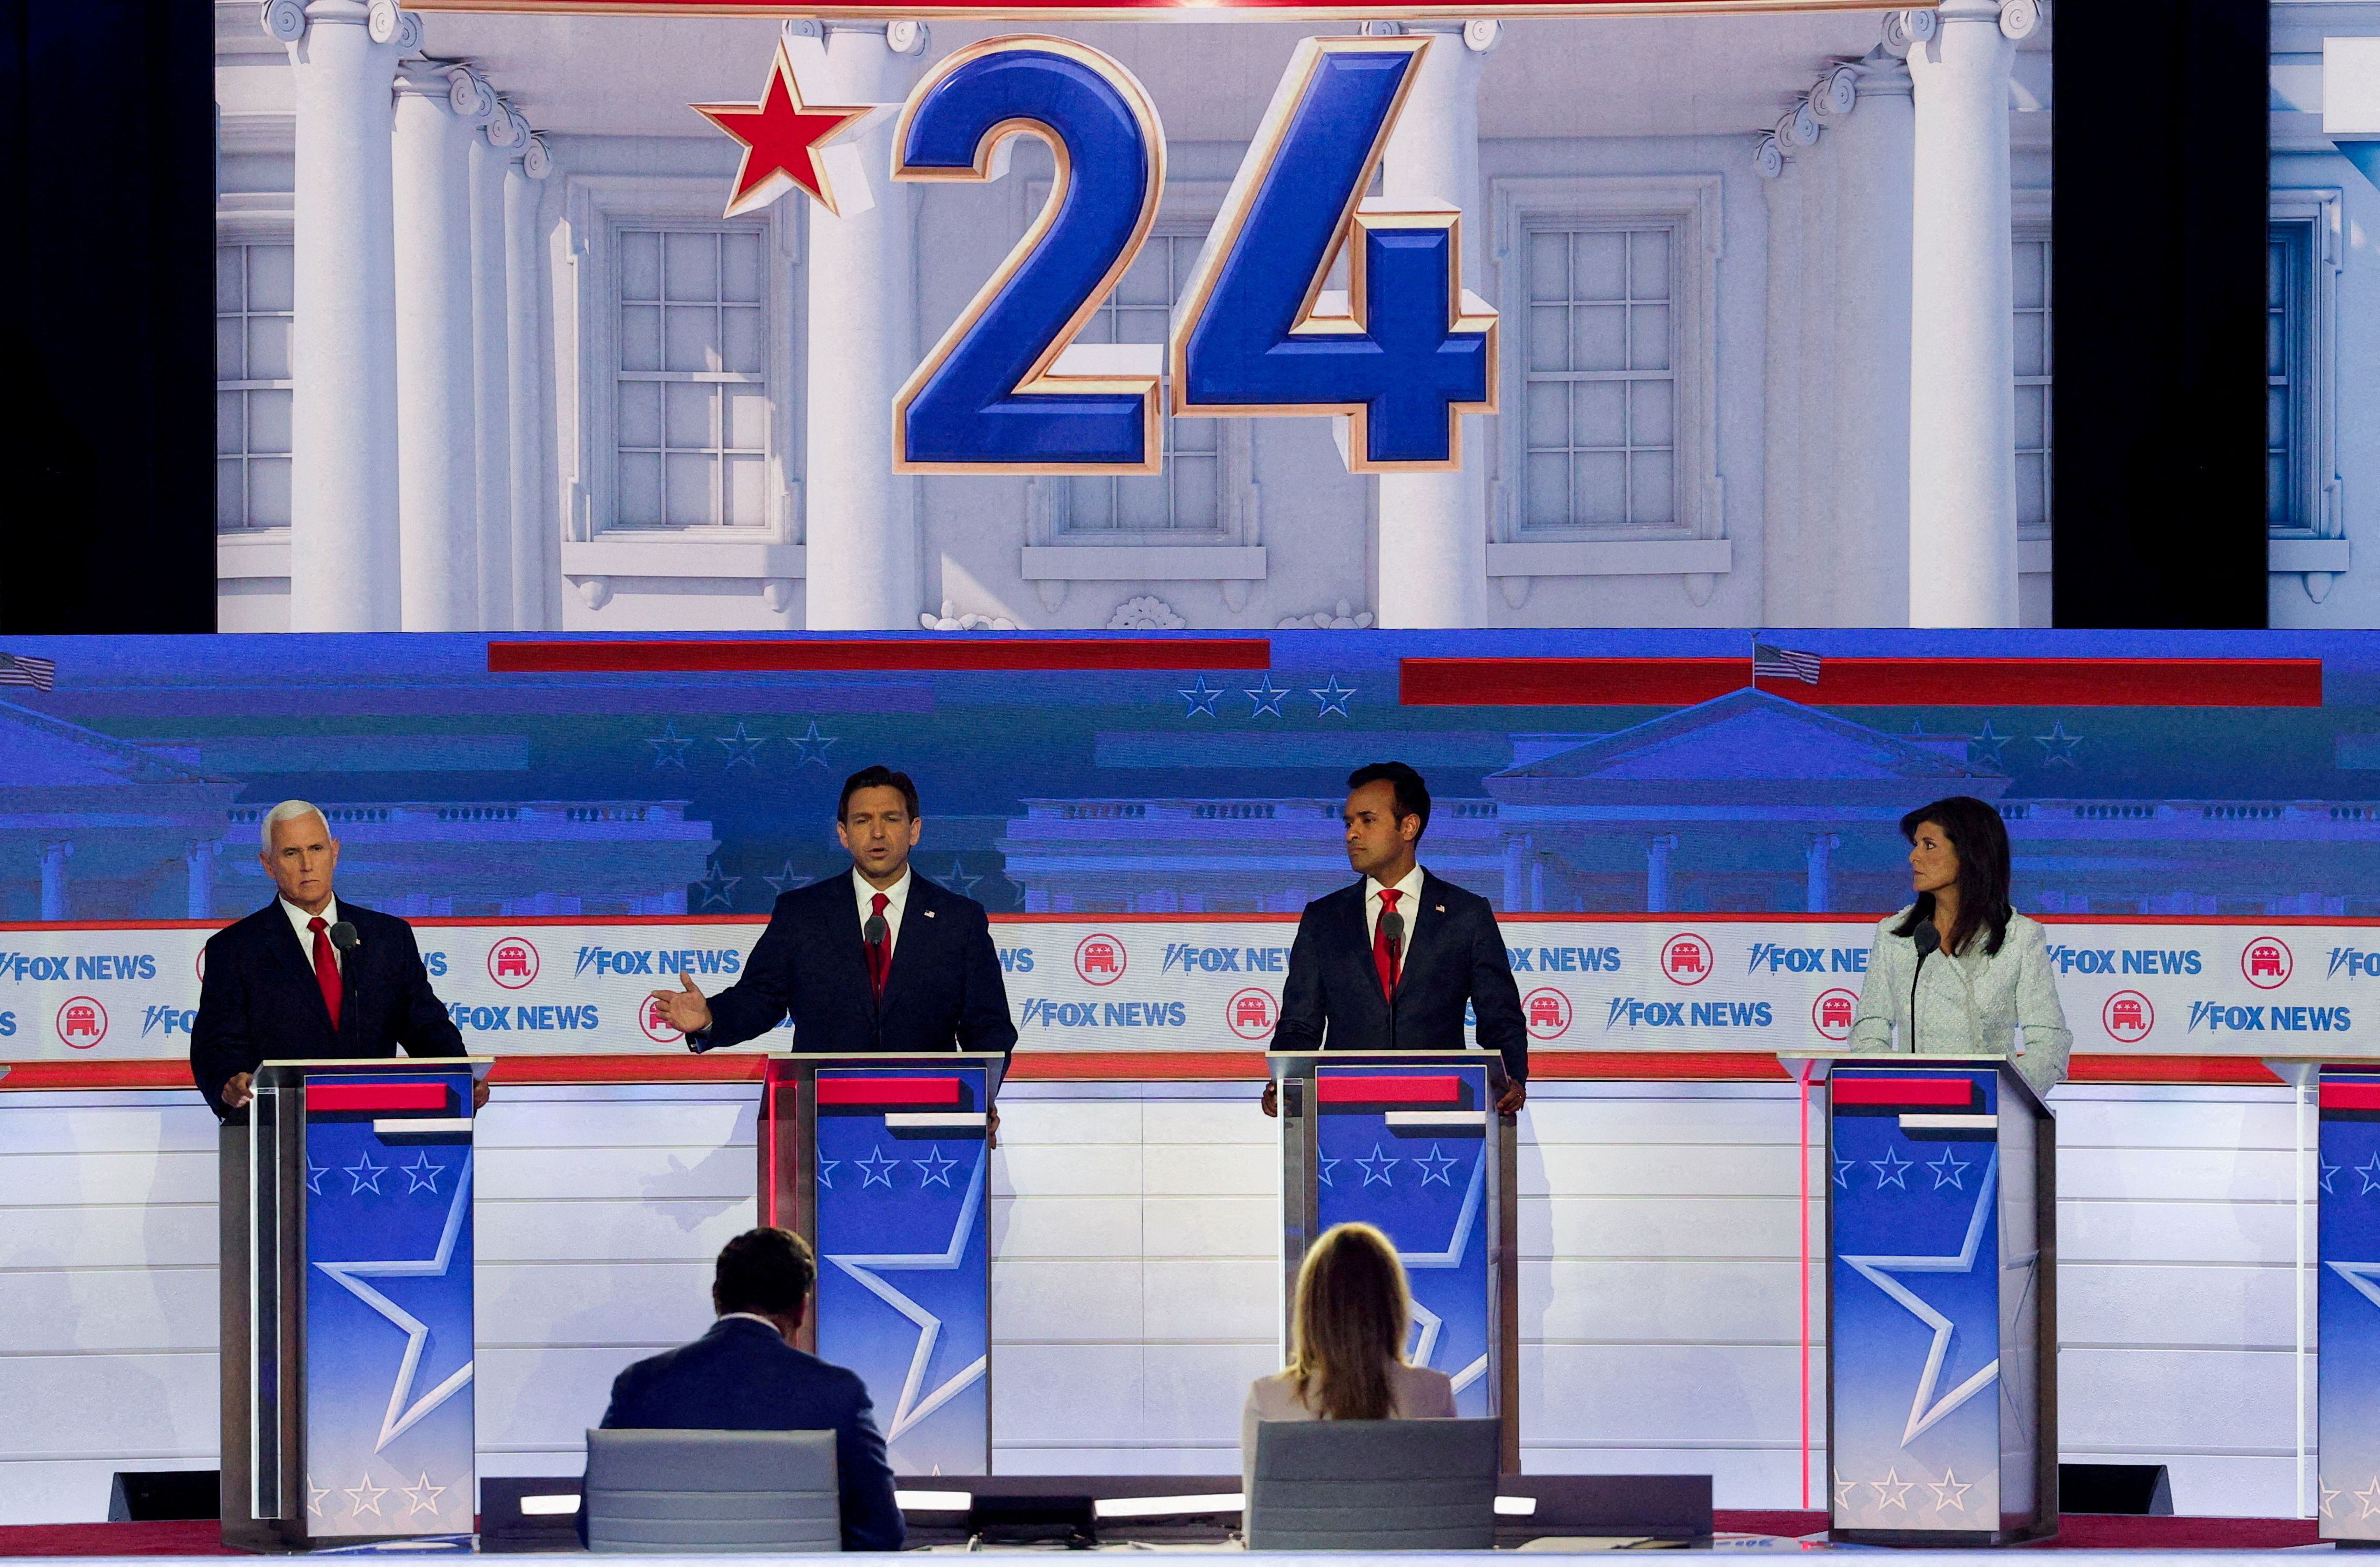 El primer debate de candidatos republicanos de la campaña presidencial estadounidense de 2024 se realizó en Milwaukee, Wisconsin, el 23 de agosto de 2023 (REUTERS/Brian Snyder)